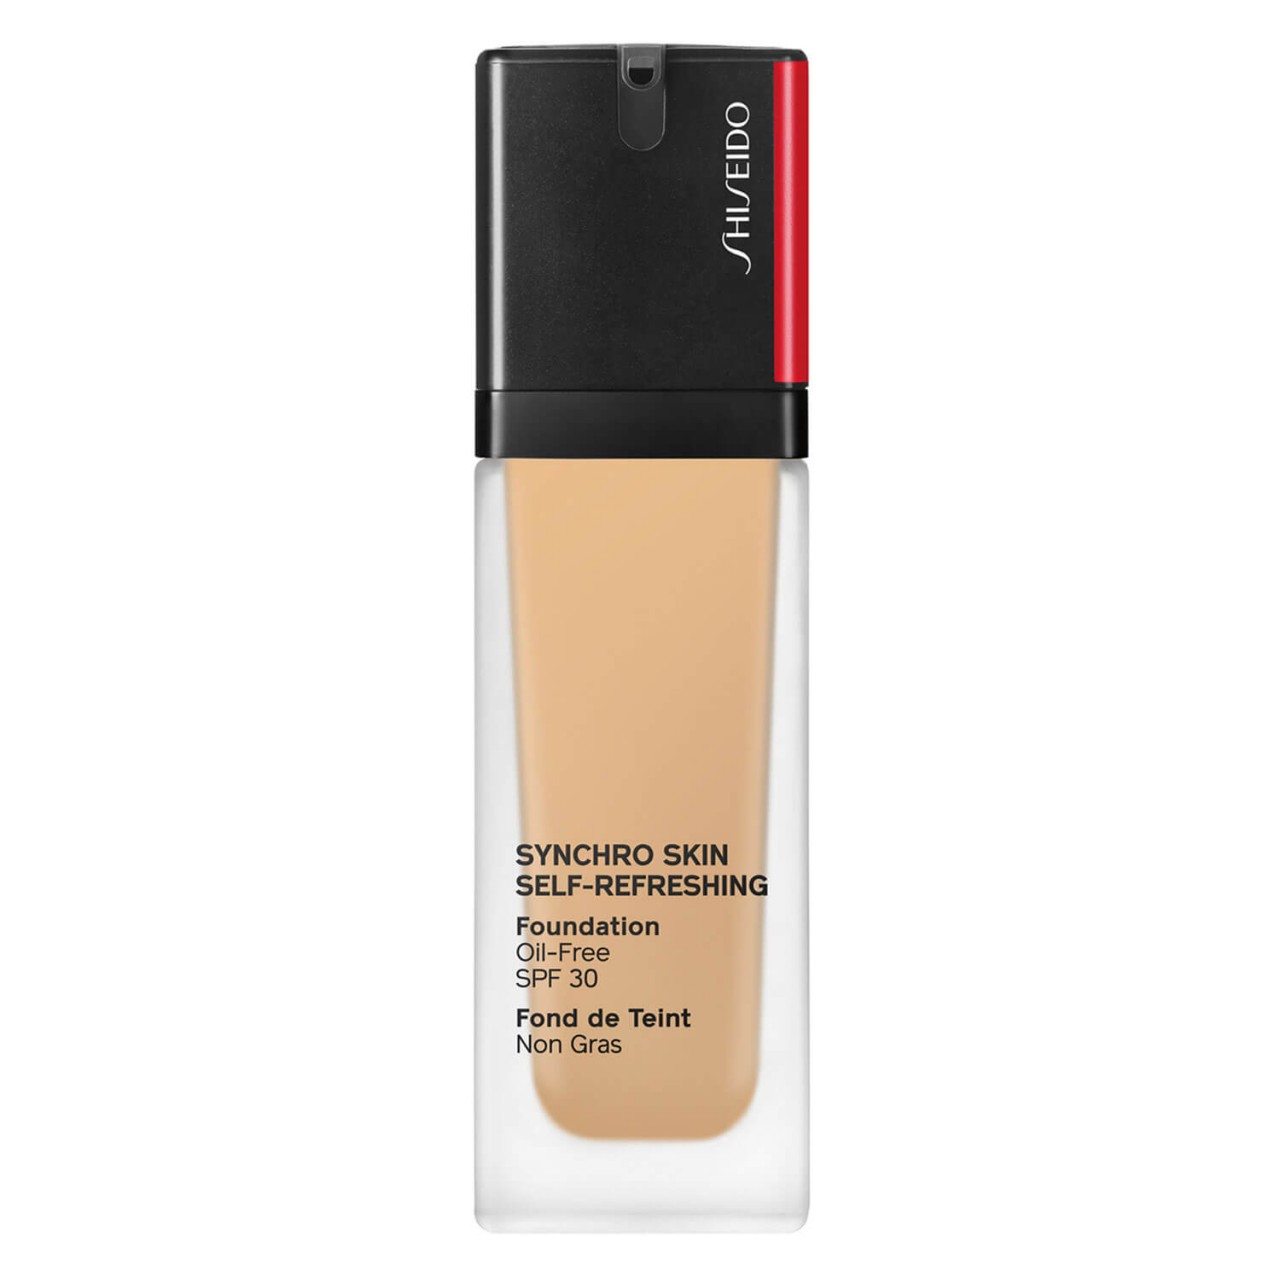 Synchro Skin Self-Refreshing - Foundation SPF 30 Bamboo 330 von Shiseido